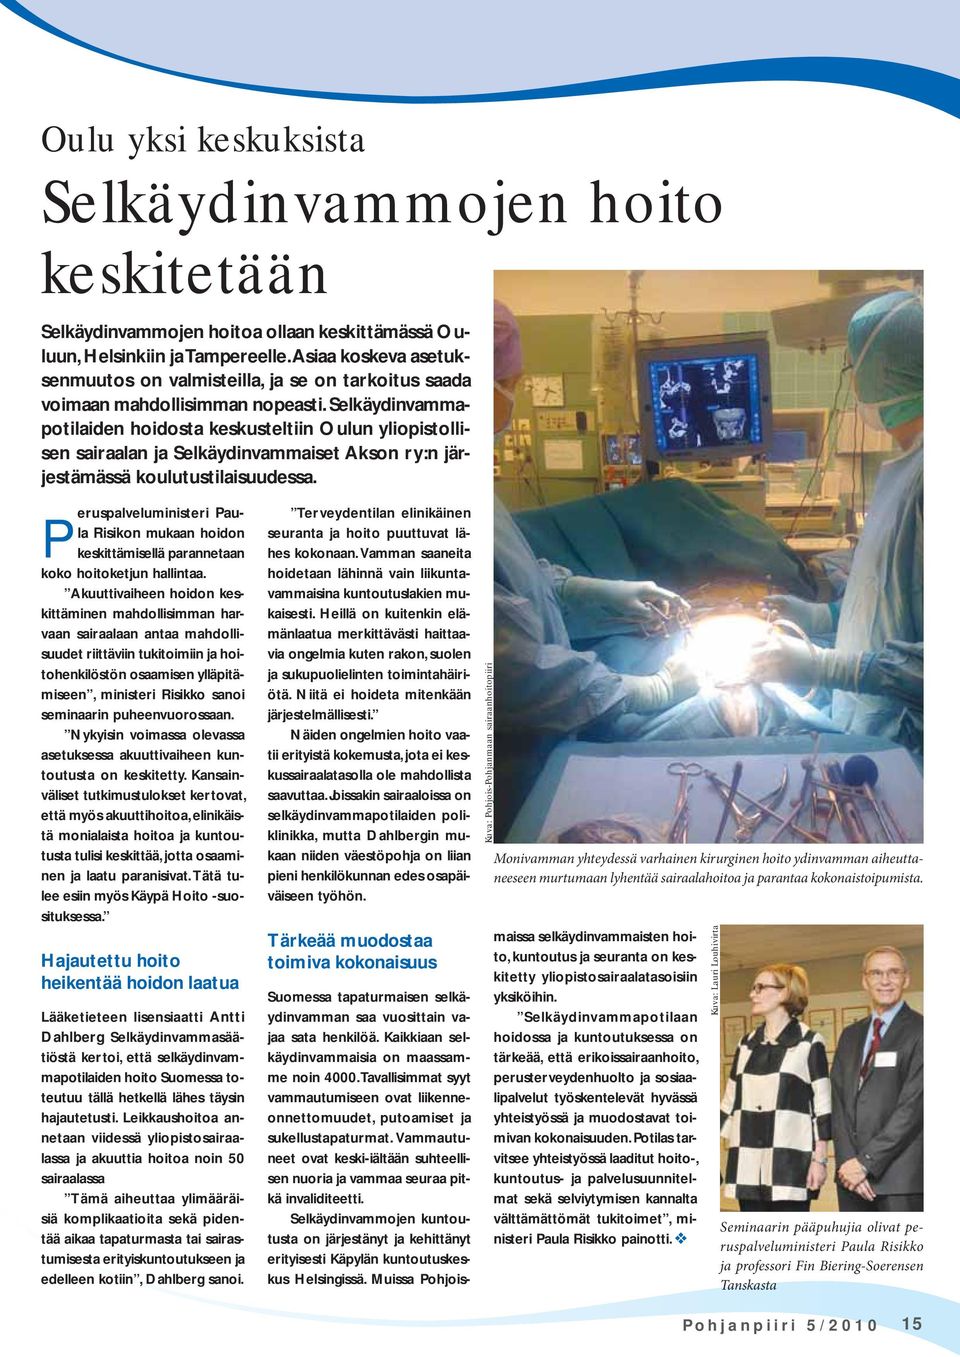 Selkäydinvammapotilaiden hoidosta keskusteltiin Oulun yliopistollisen sairaalan ja Selkäydinvammaiset Akson ry:n järjestämässä koulutustilaisuudessa.